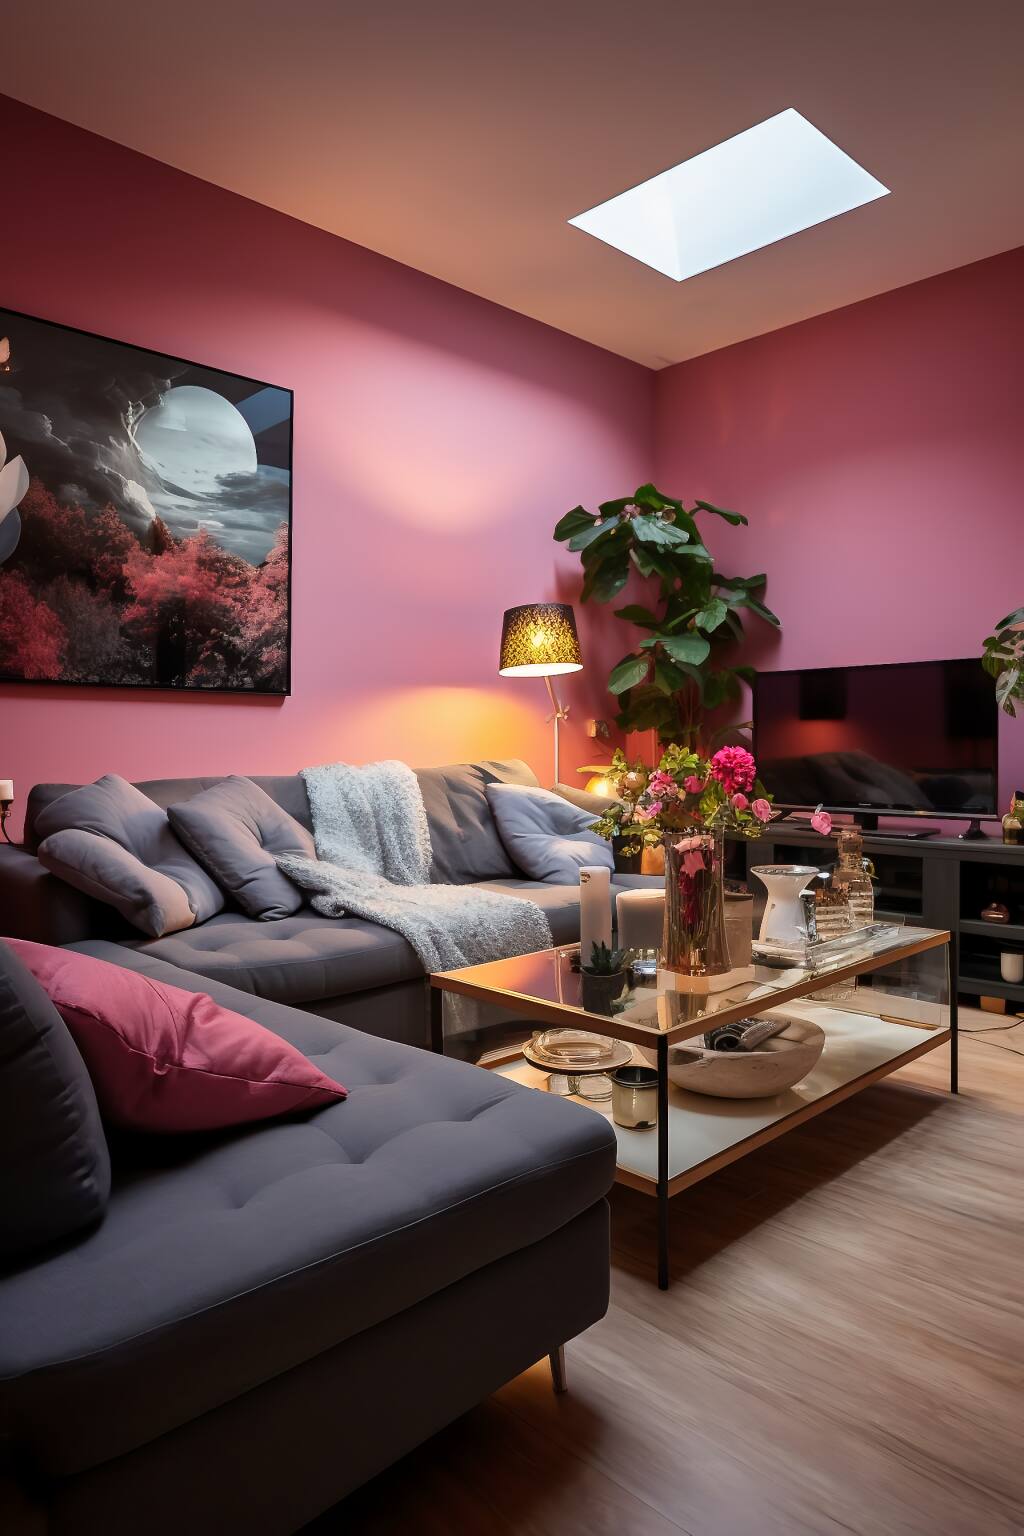 Ein Modernes Wohnzimmer Mit Rosafarbenen Wänden Und Decken, Einem Grauen Sektionssofa, Einem Couchtisch Aus Glas Und Zimmerpflanzen.